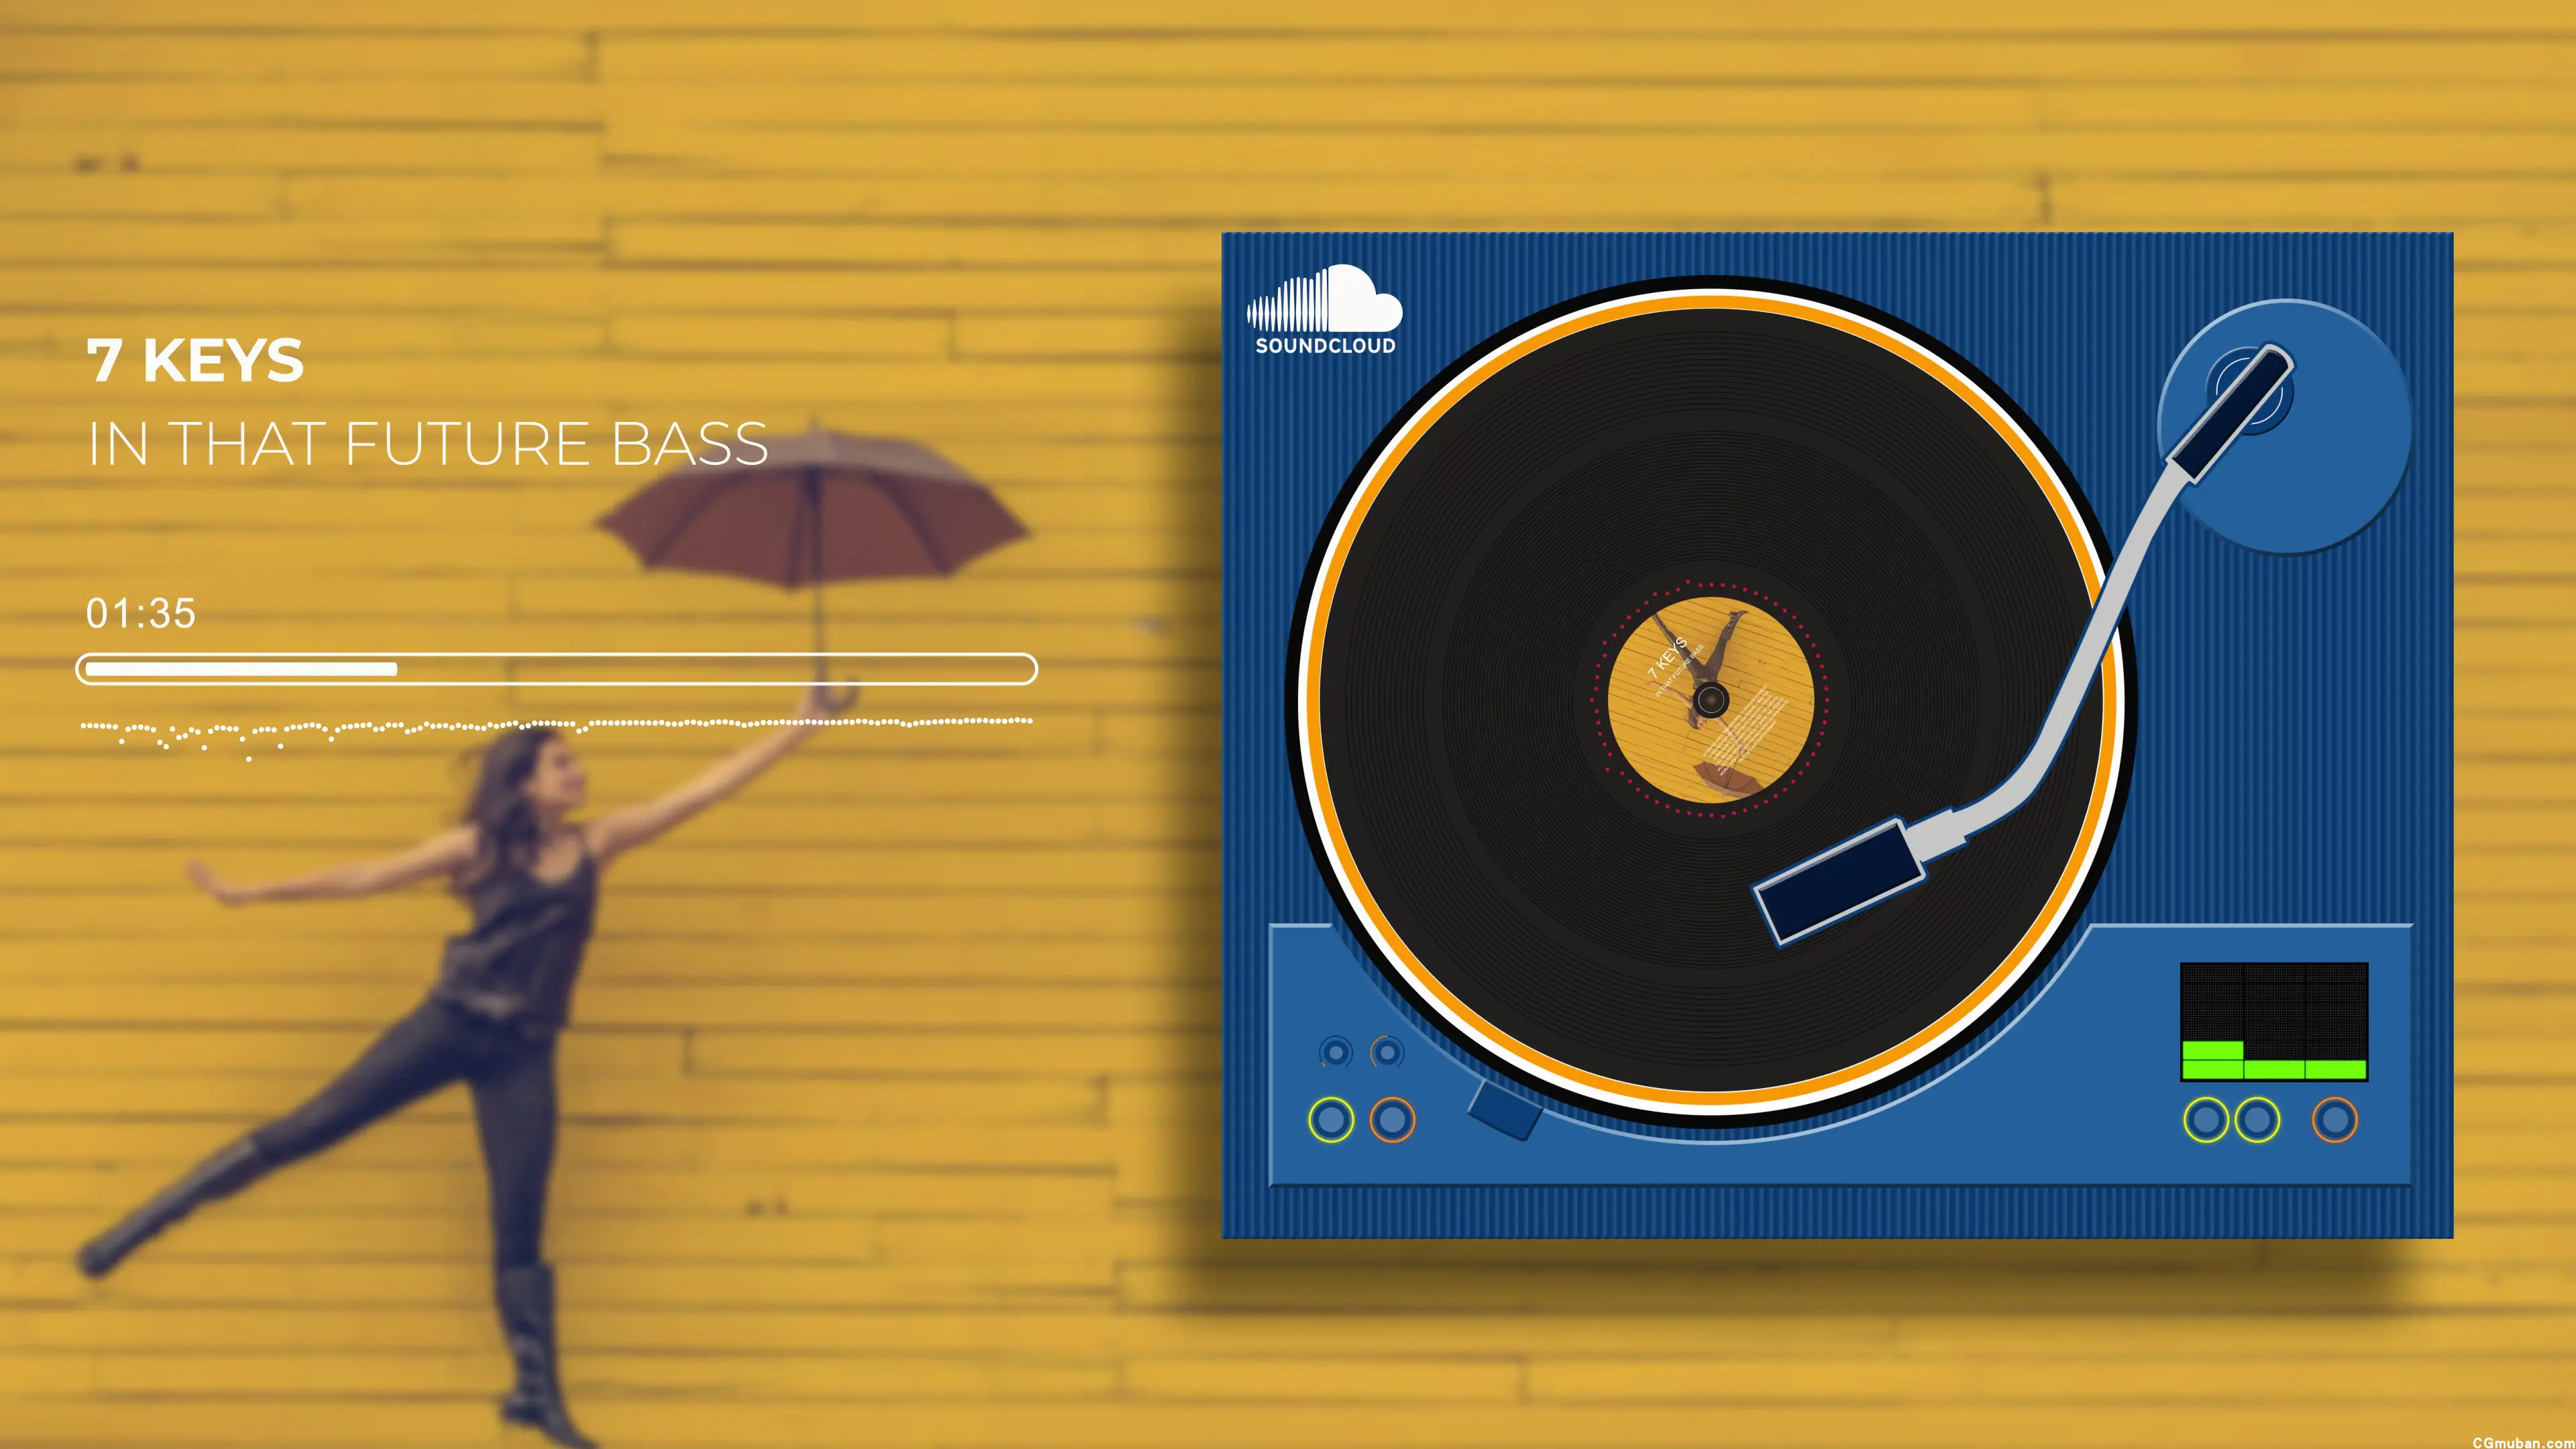 创意设计音乐专辑封面音频频谱可视化黑胶磁带播放器均衡器AE模板插图(2)